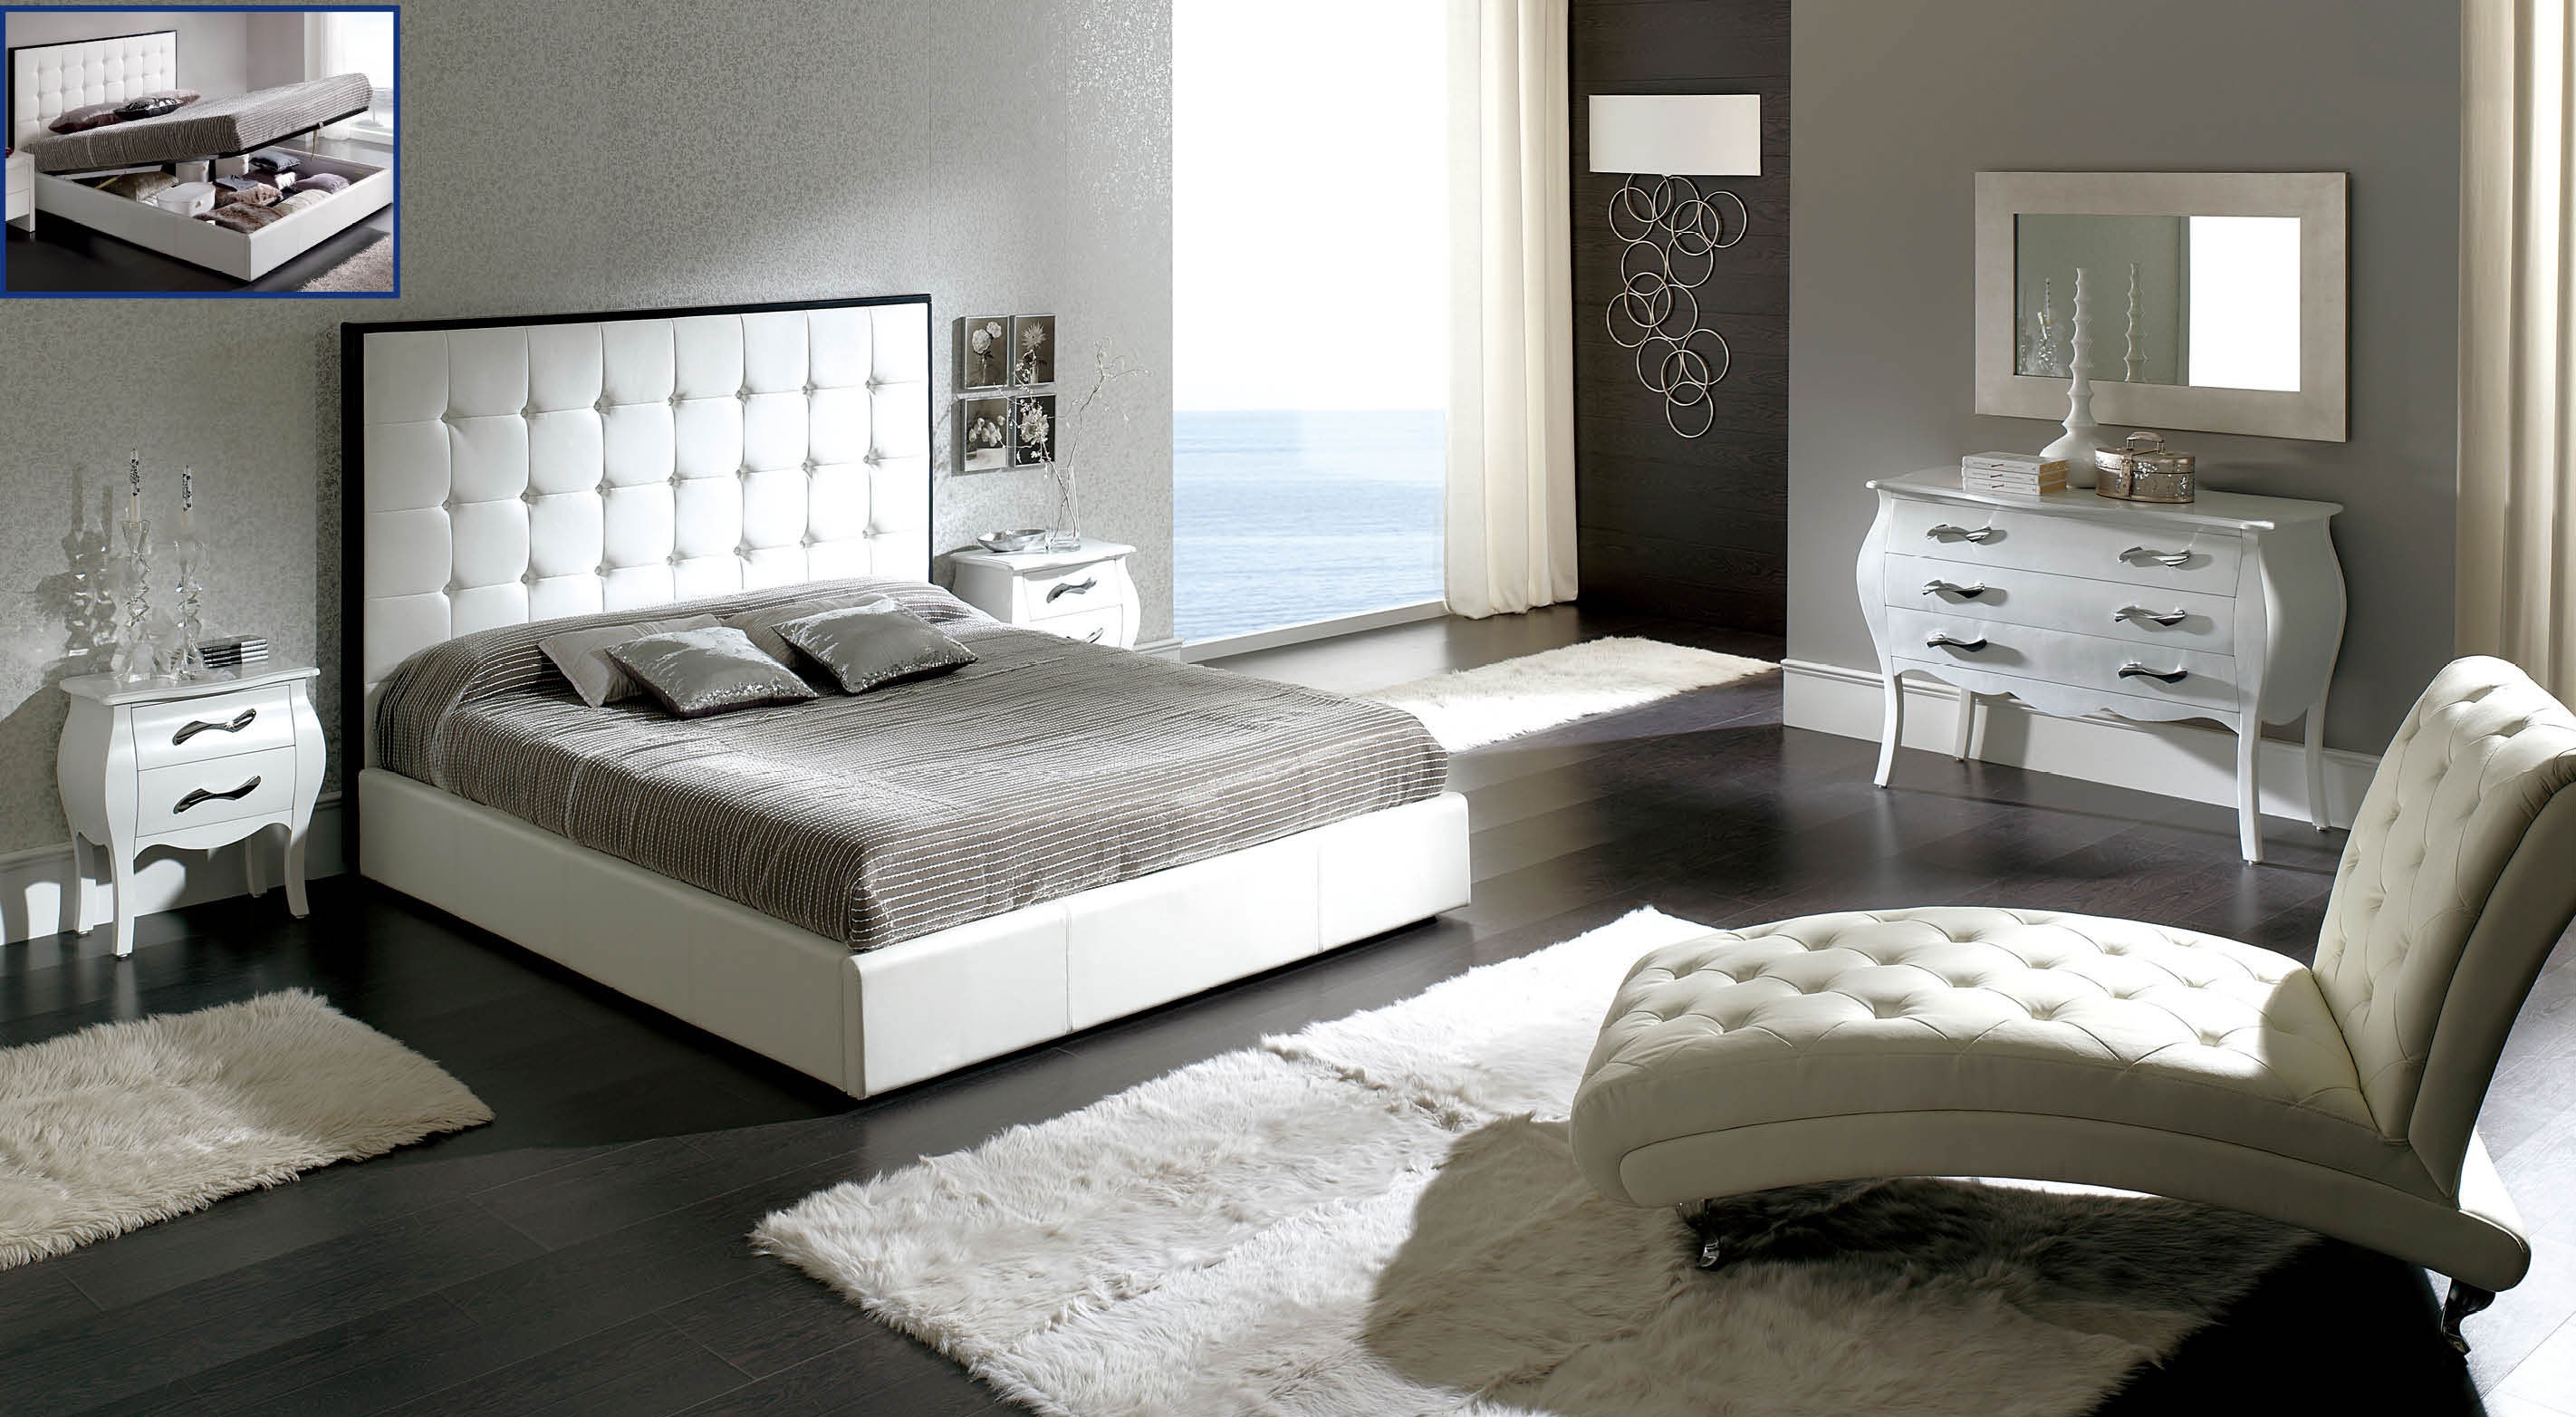 Peninsula White Modern Italian Bedroom set - N Star Modern ...